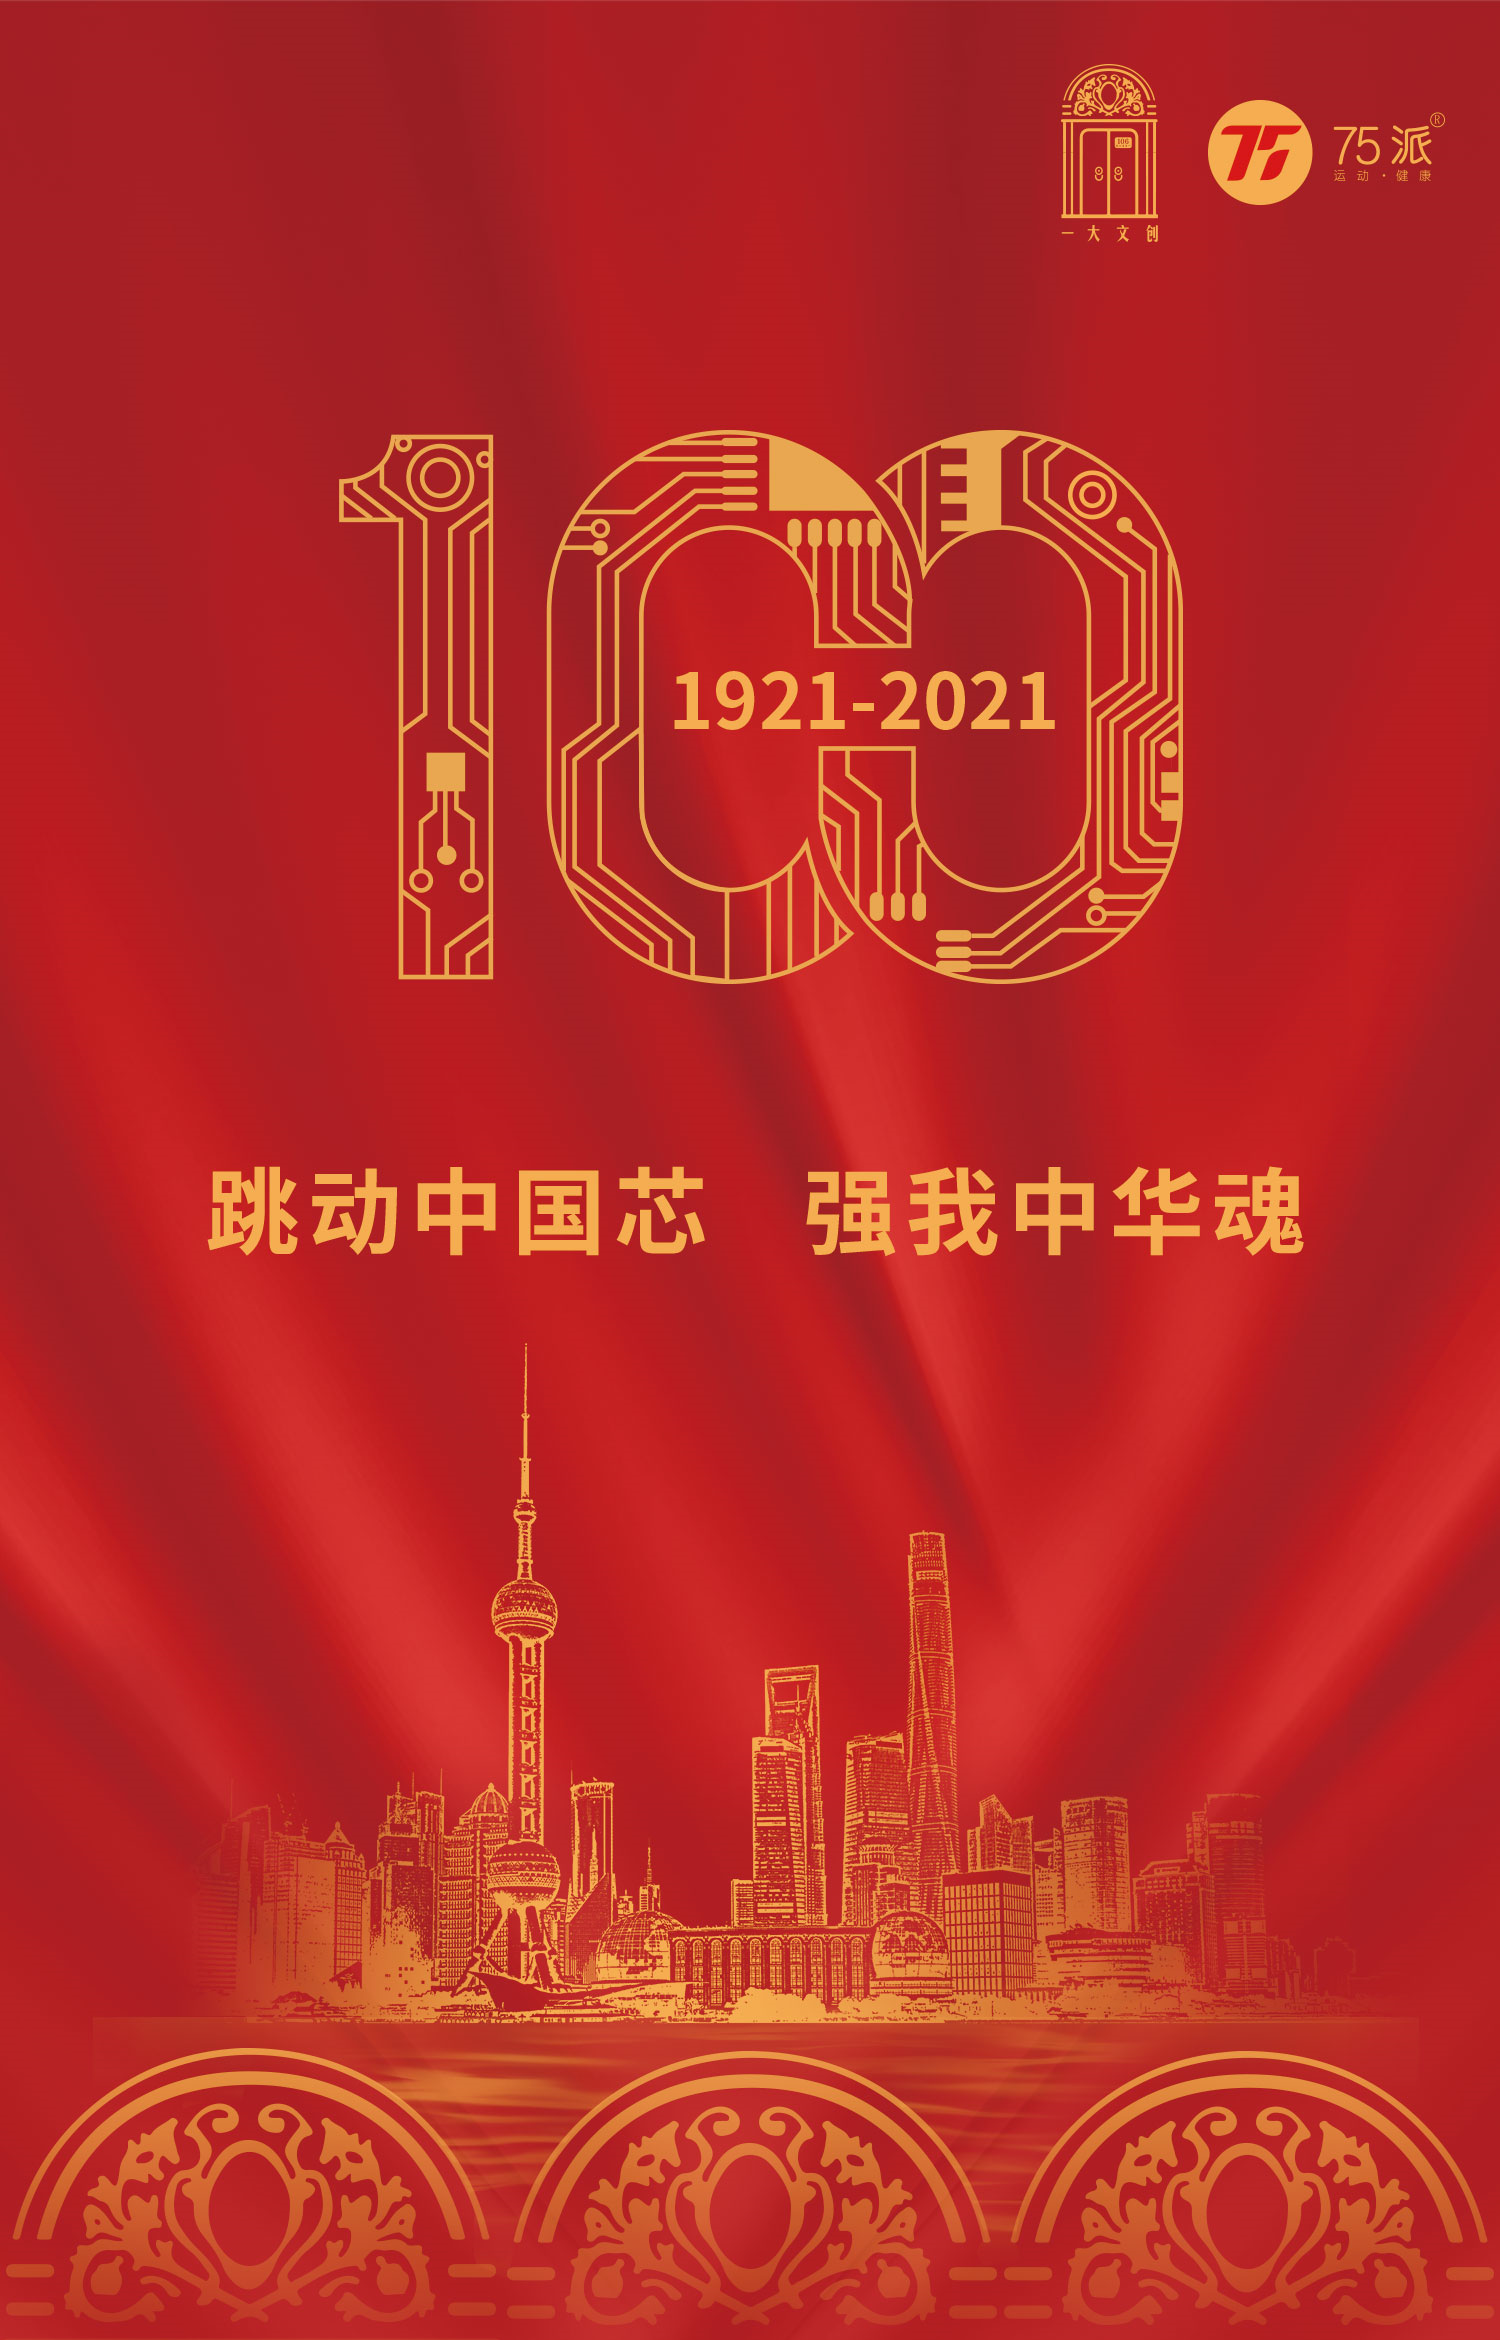 一大会址纪念馆,铼锶信息推出四大系列红色文创产品献礼建党100周年